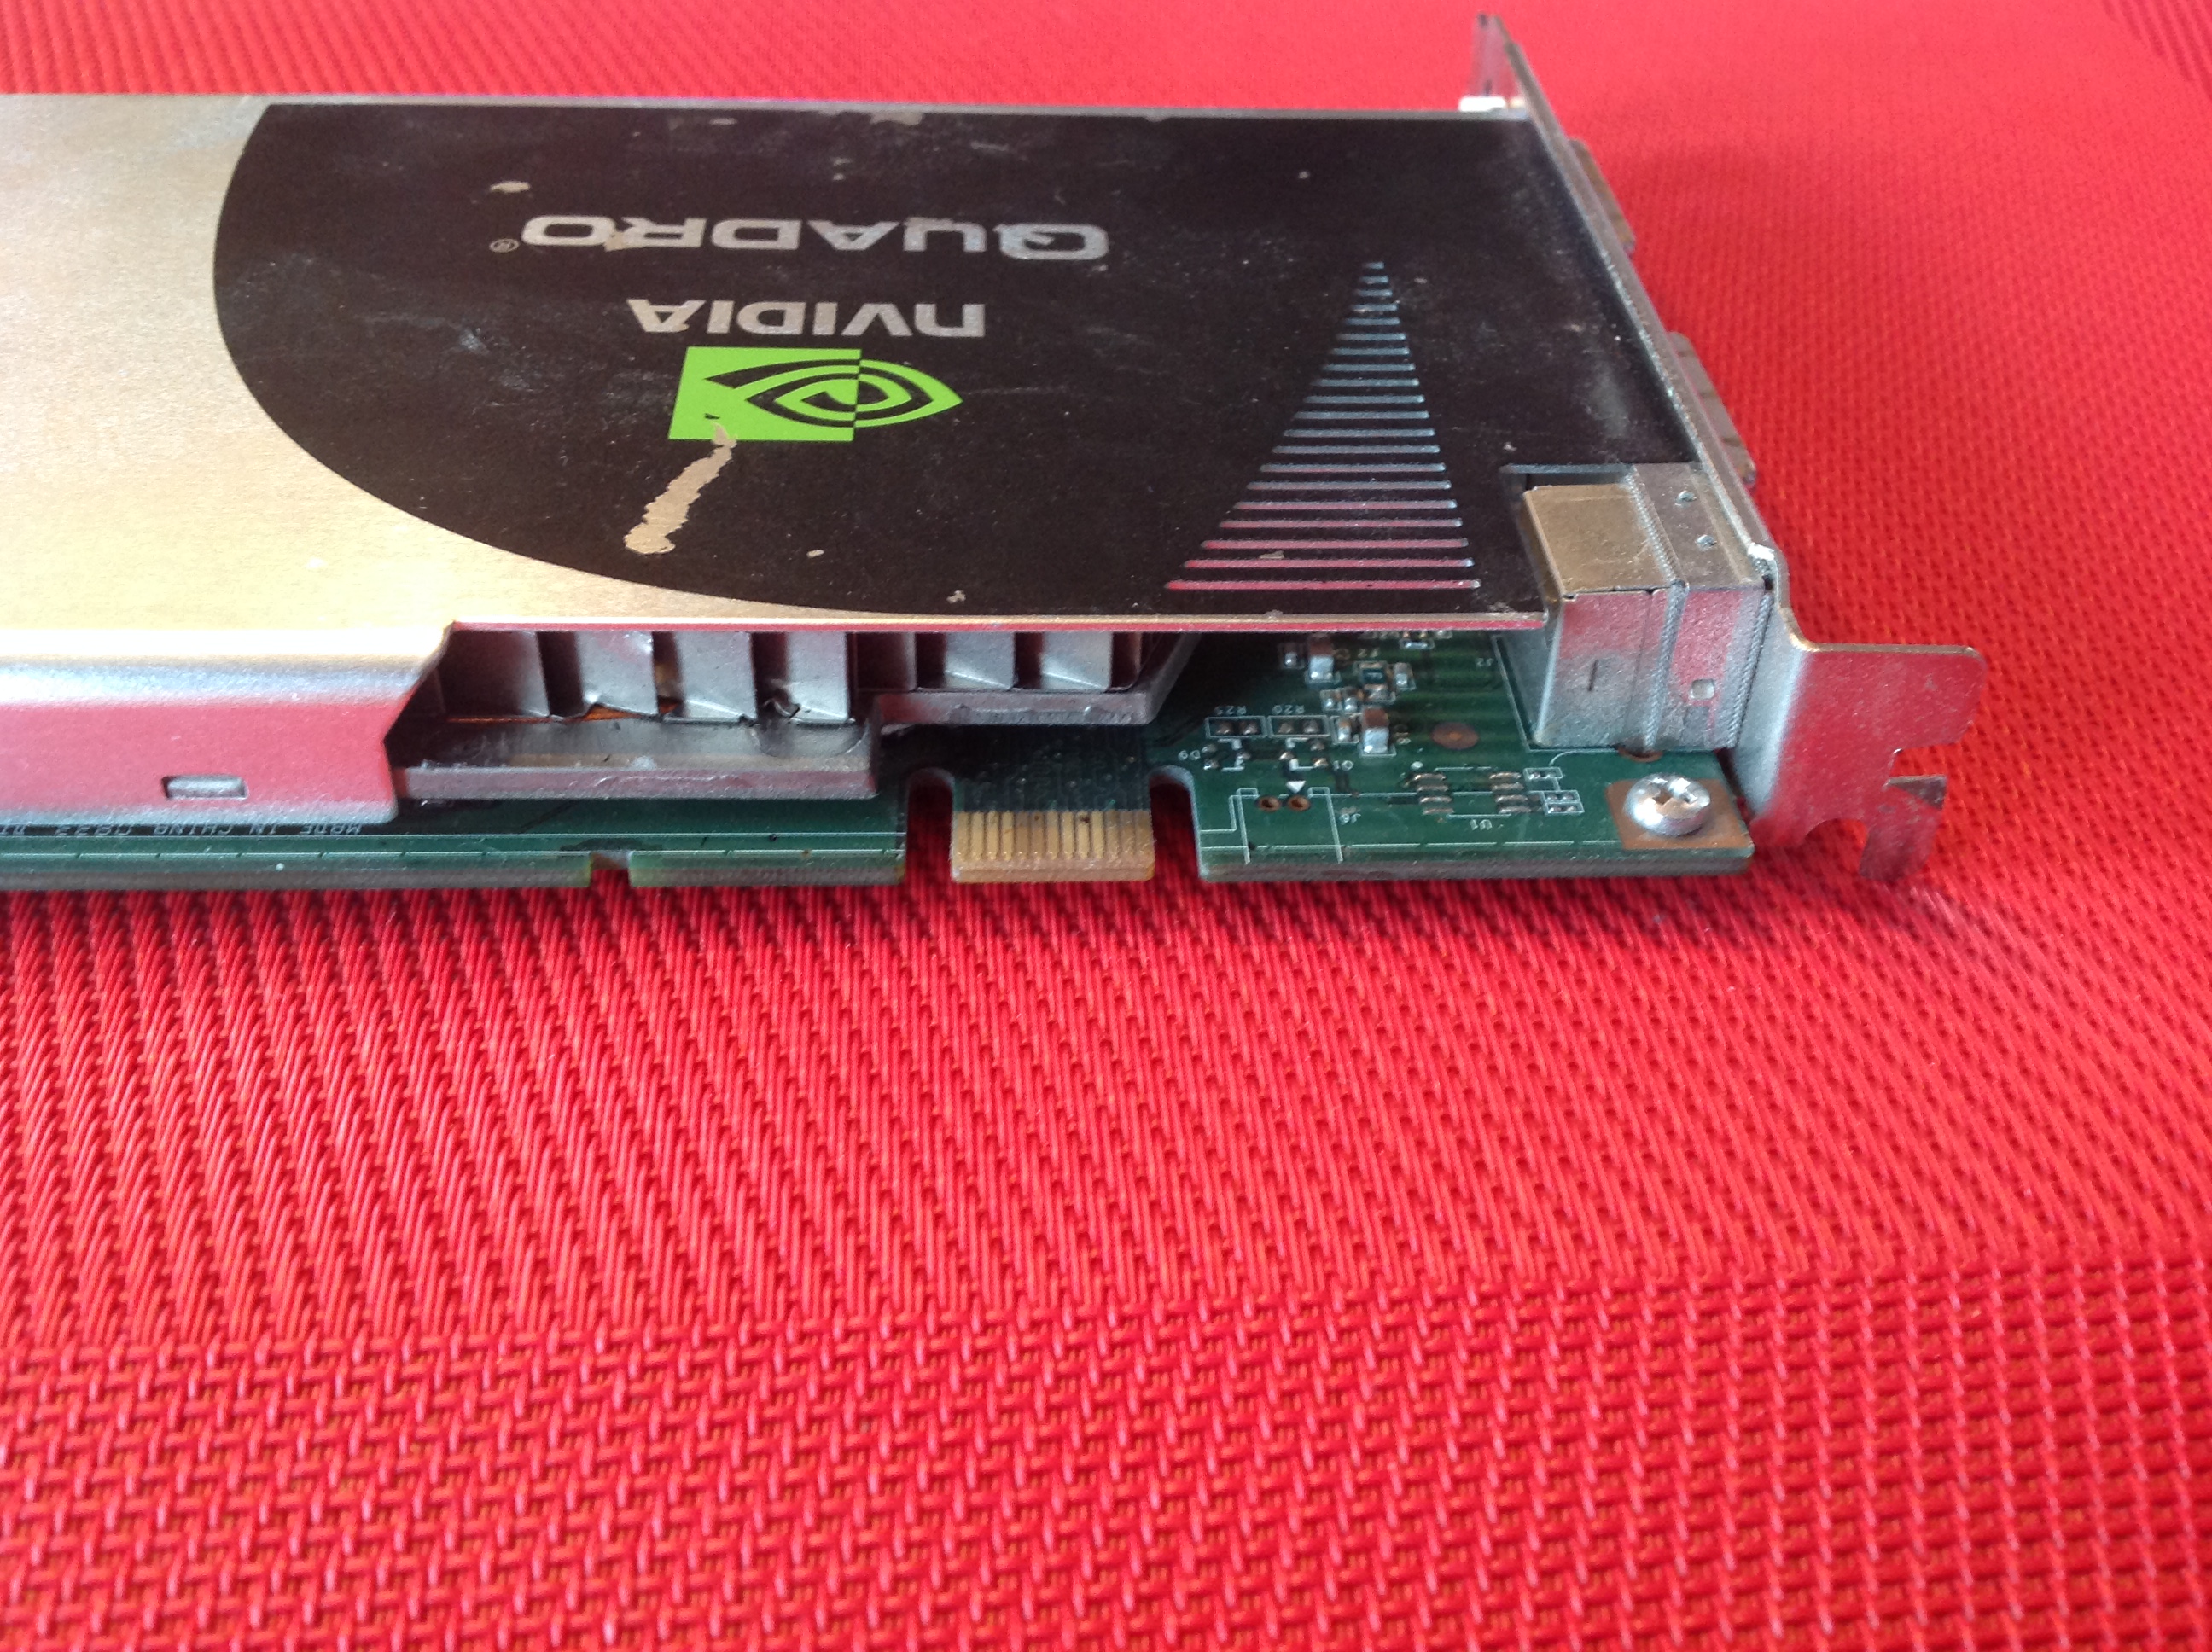 NVIDIA Quadro FX 3700 by PNY Grafikkarten Quadro FX 3700-512 MB GDDR3 PCIe 2.0 x16